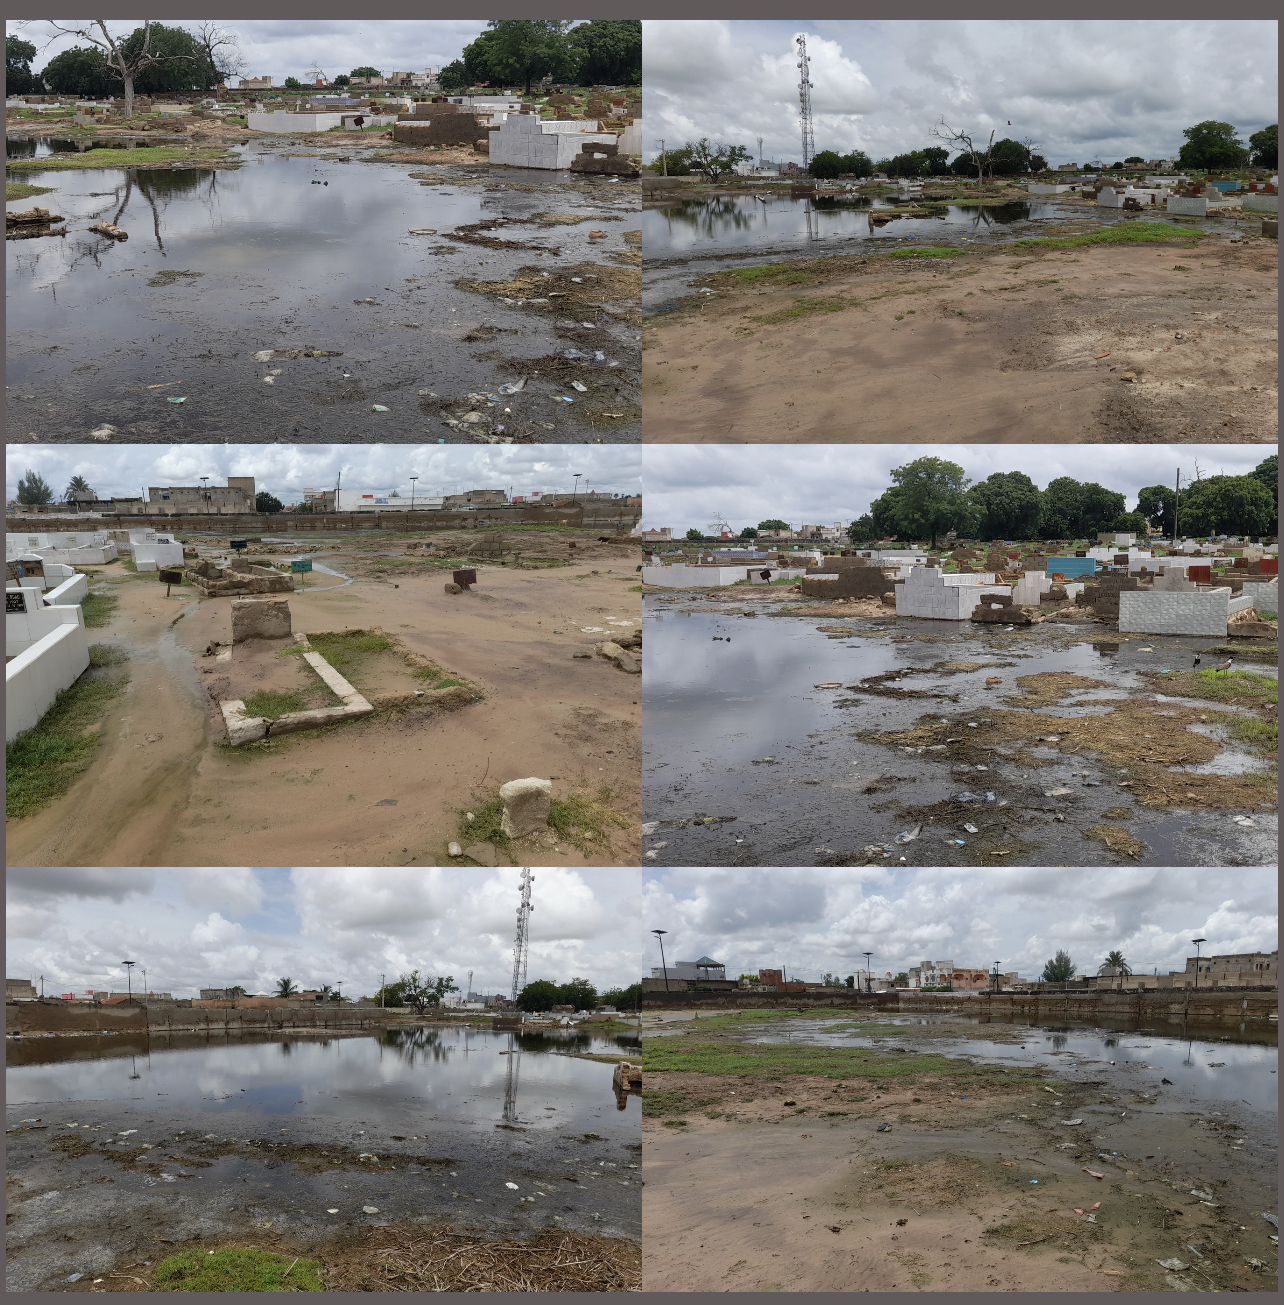 Commune de Kaolack / Keur Maloum Diaw : Les eaux de pluie occupant une bonne partie du cimetière, les riverains exigent des canaux d'évacuation (images).